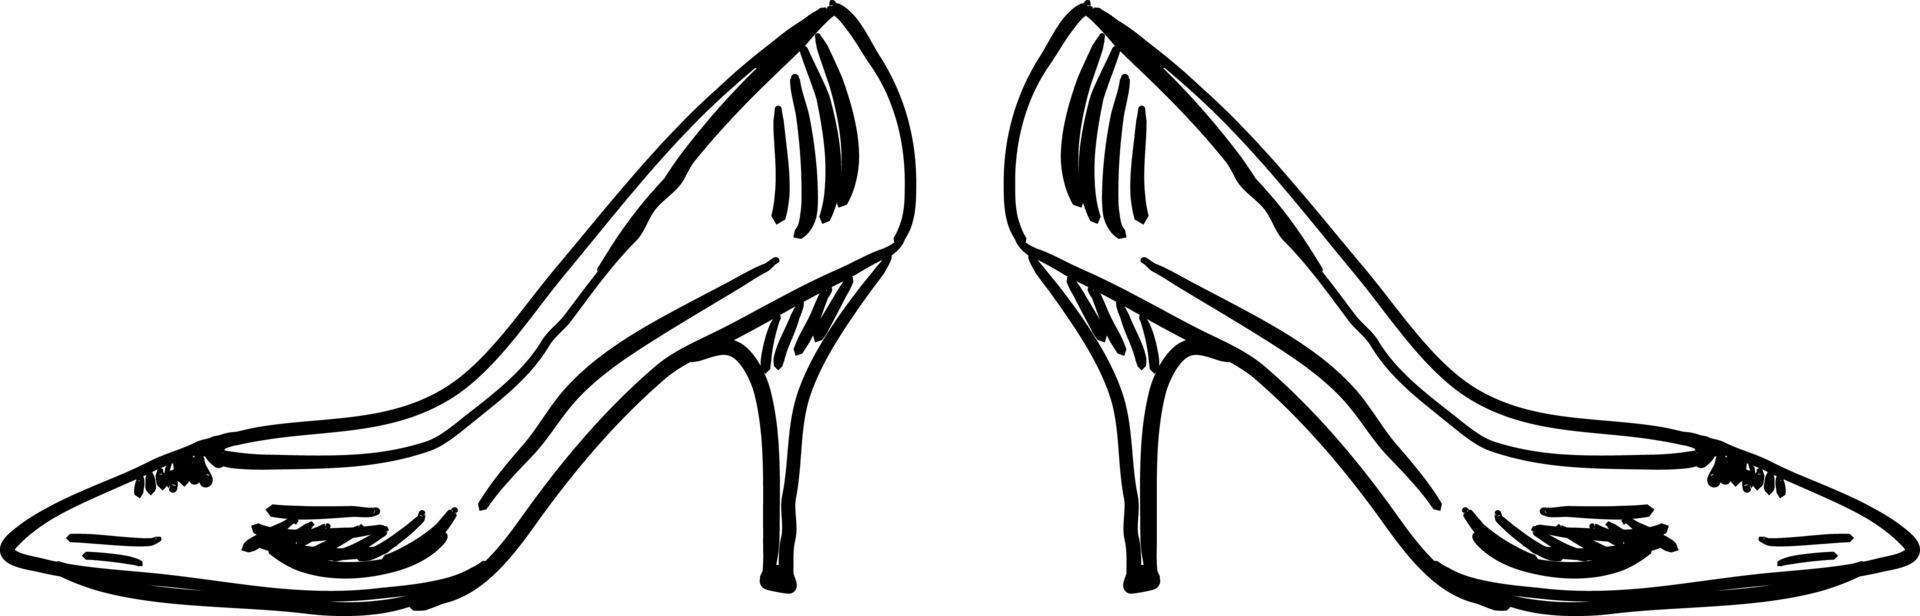 Girl heels, illustration, vector on white background.